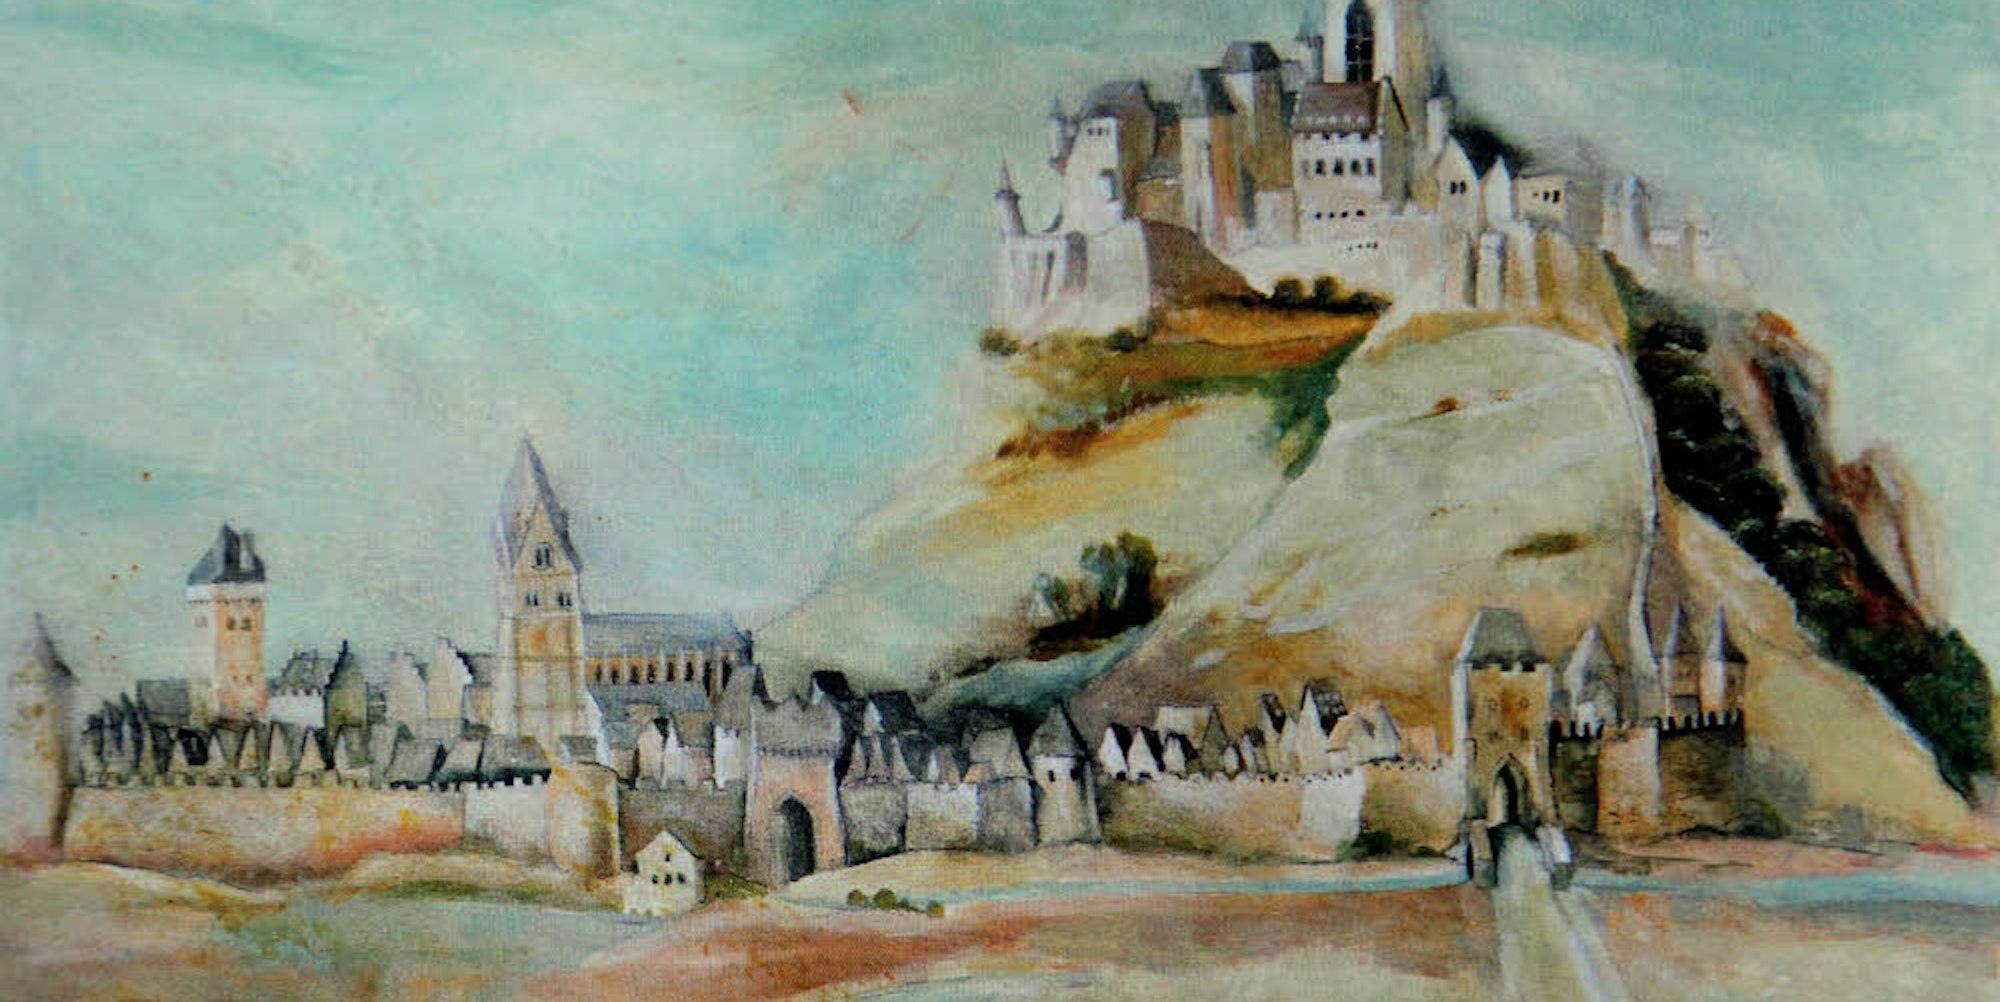 Nach einem Merian-Stich hat Reinhard Zado diese historische Ansicht vom Michaelsberg in Öl gemalt.